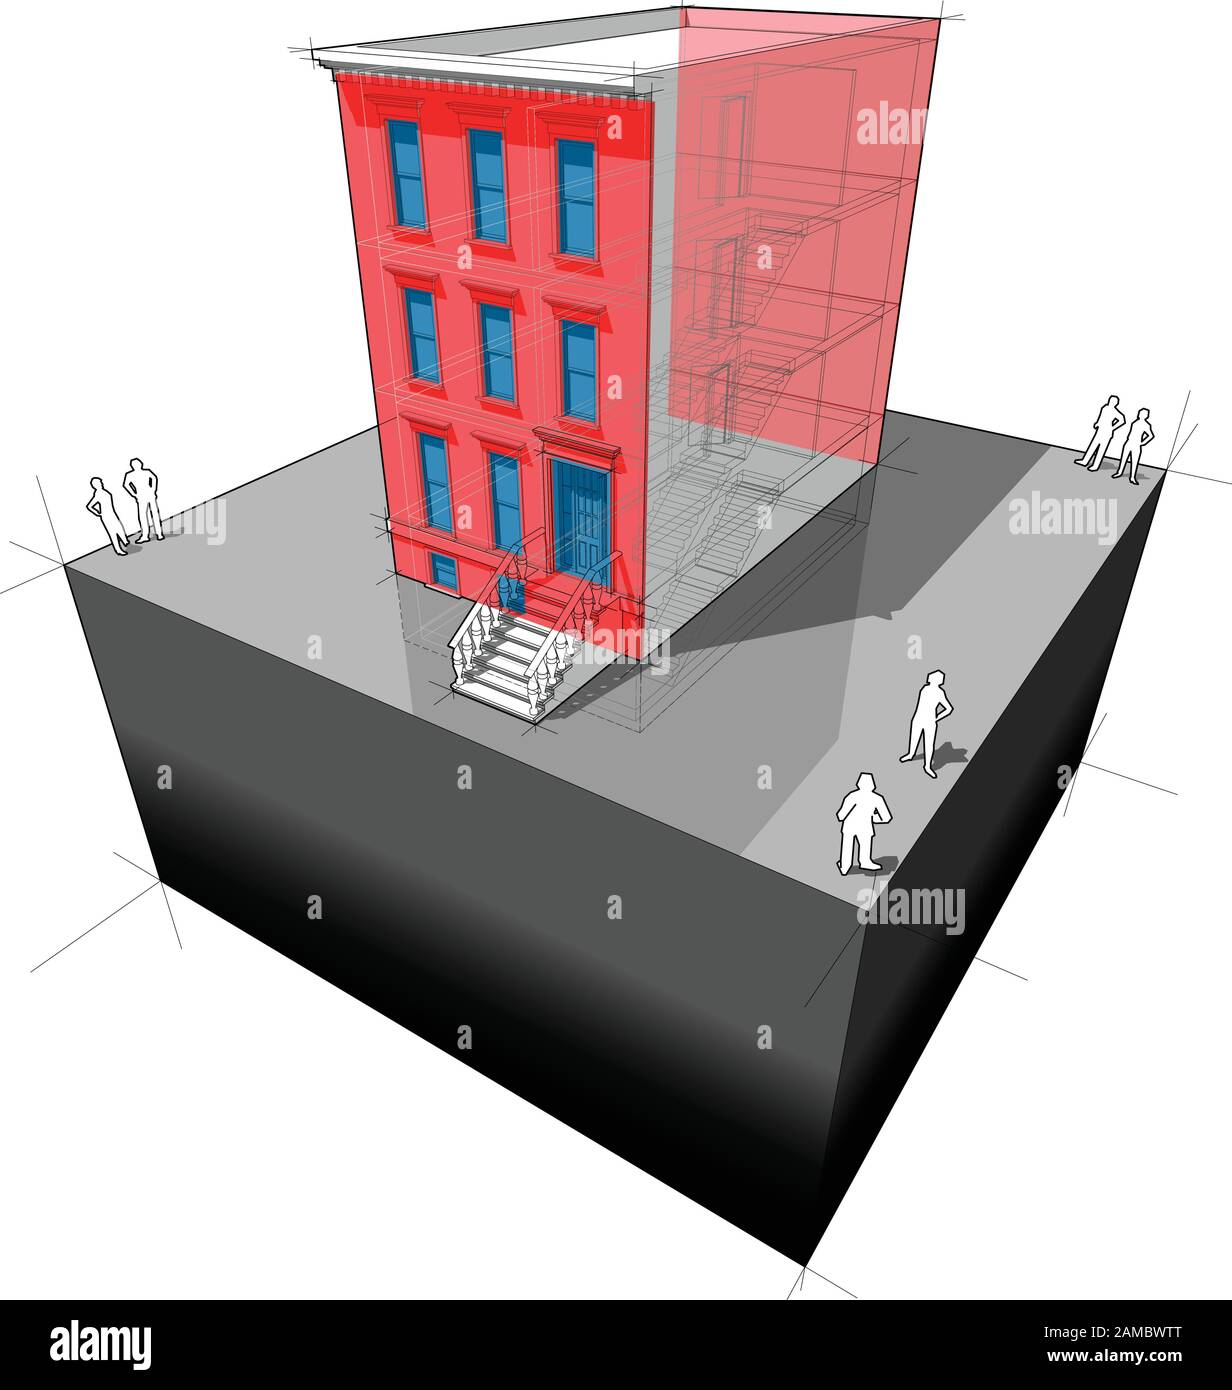 Diagramm eines typischen amerikanischen Reihenhauses aus Braunstein mit zusätzlicher Wanddämmung und neuen Fenstern zur Verbesserung der Energieeffizienz des Gebäudes Stock Vektor